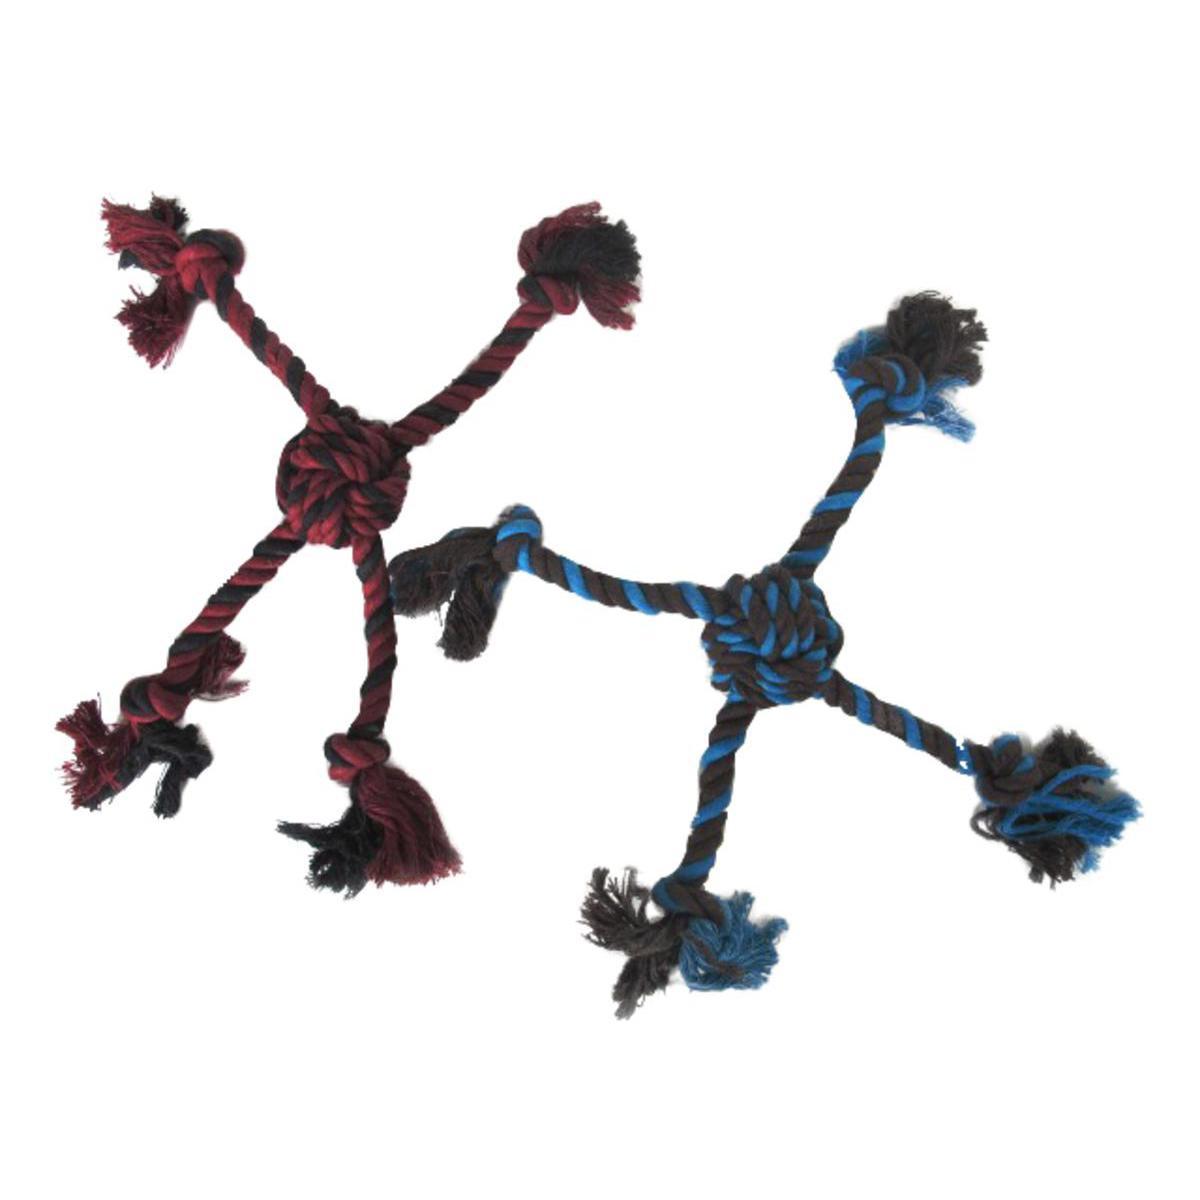 Jouet coton en forme de croix - Coton - 27 x 6 x H 6 cm - Noir et rouge ou bleu et marron